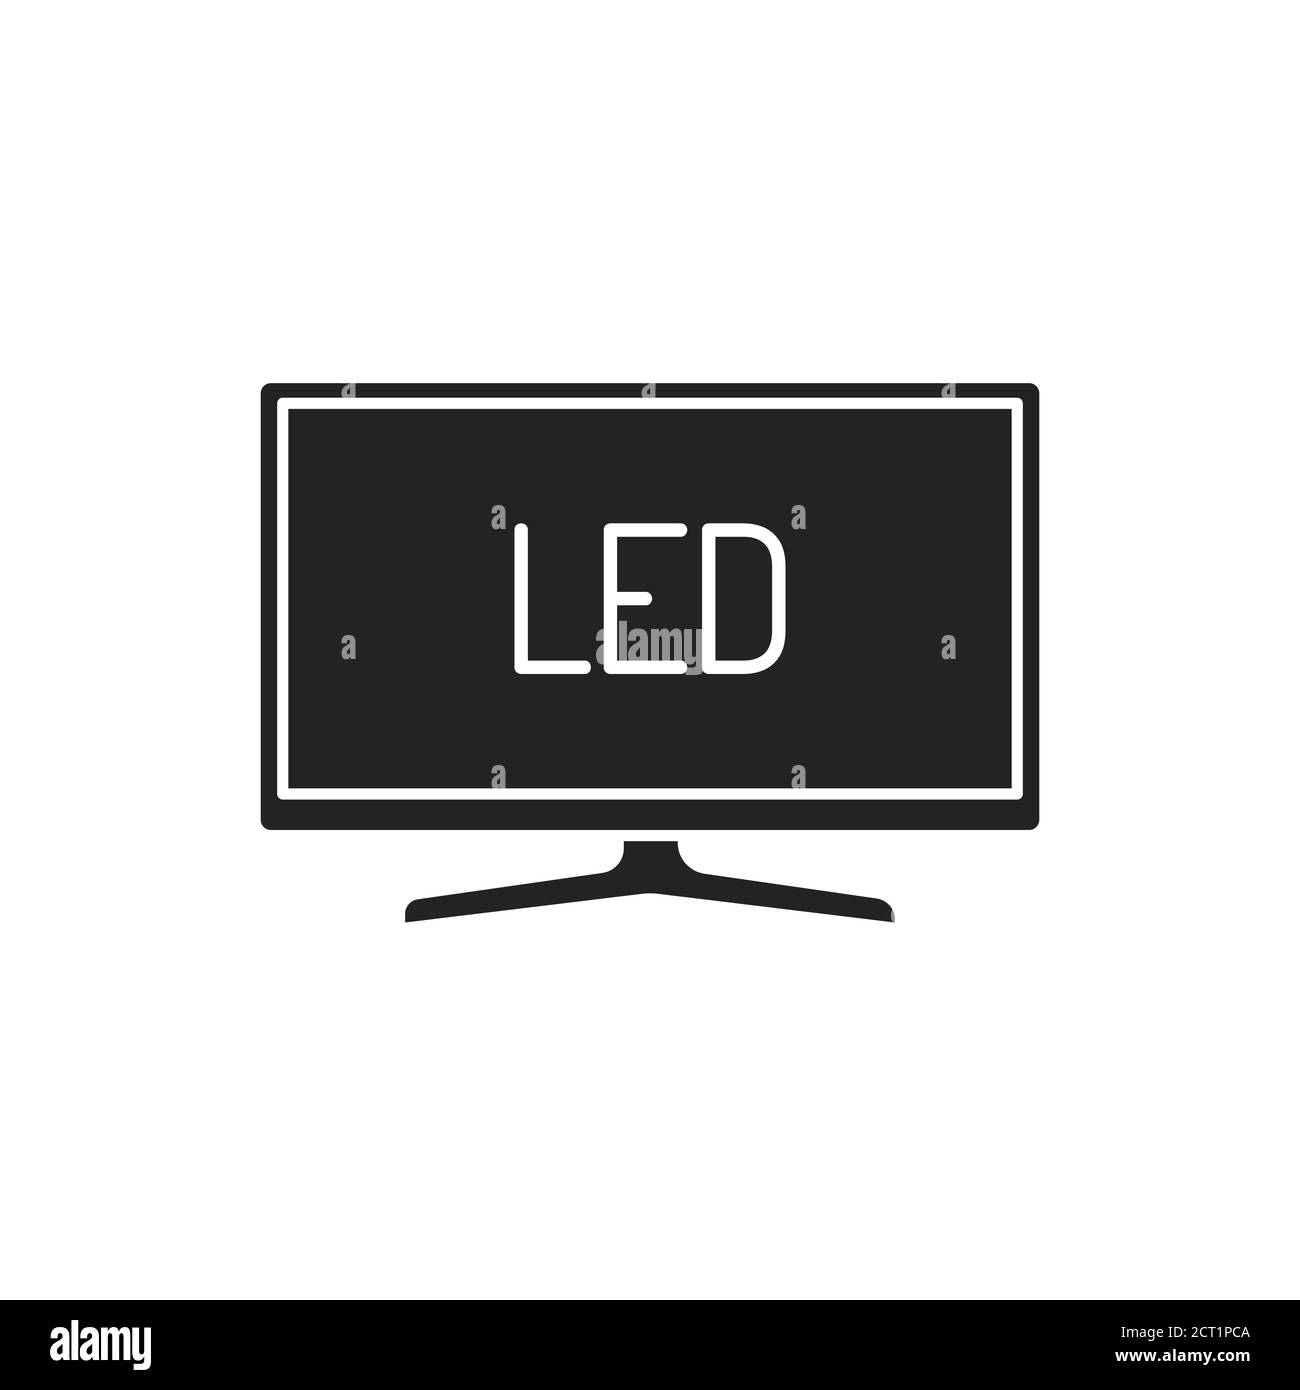 LED-TV-Display mit schwarzem Glyph-Symbol. Full High Definition. LCD-Fernseher mit LED-Hintergrundbeleuchtung. Piktogramm für Webseite, mobile App, Promo. Bearbeitbare Kontur. Stock Vektor